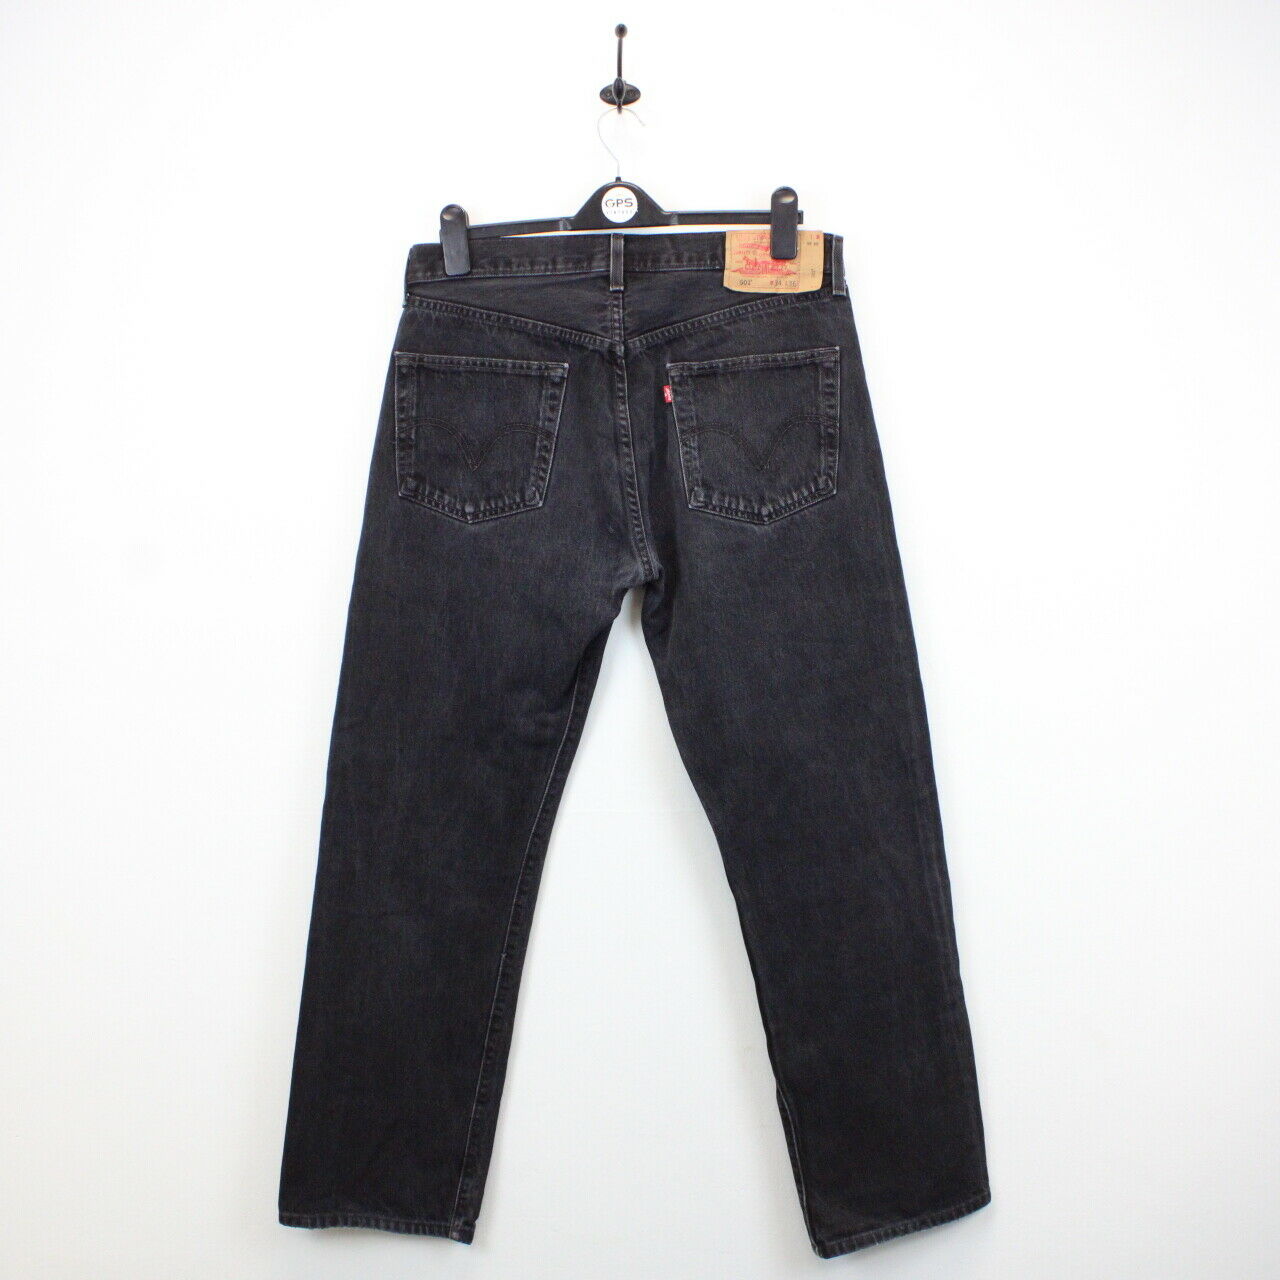 LEVIS 501 Jeans Black Charcoal | W34 L32